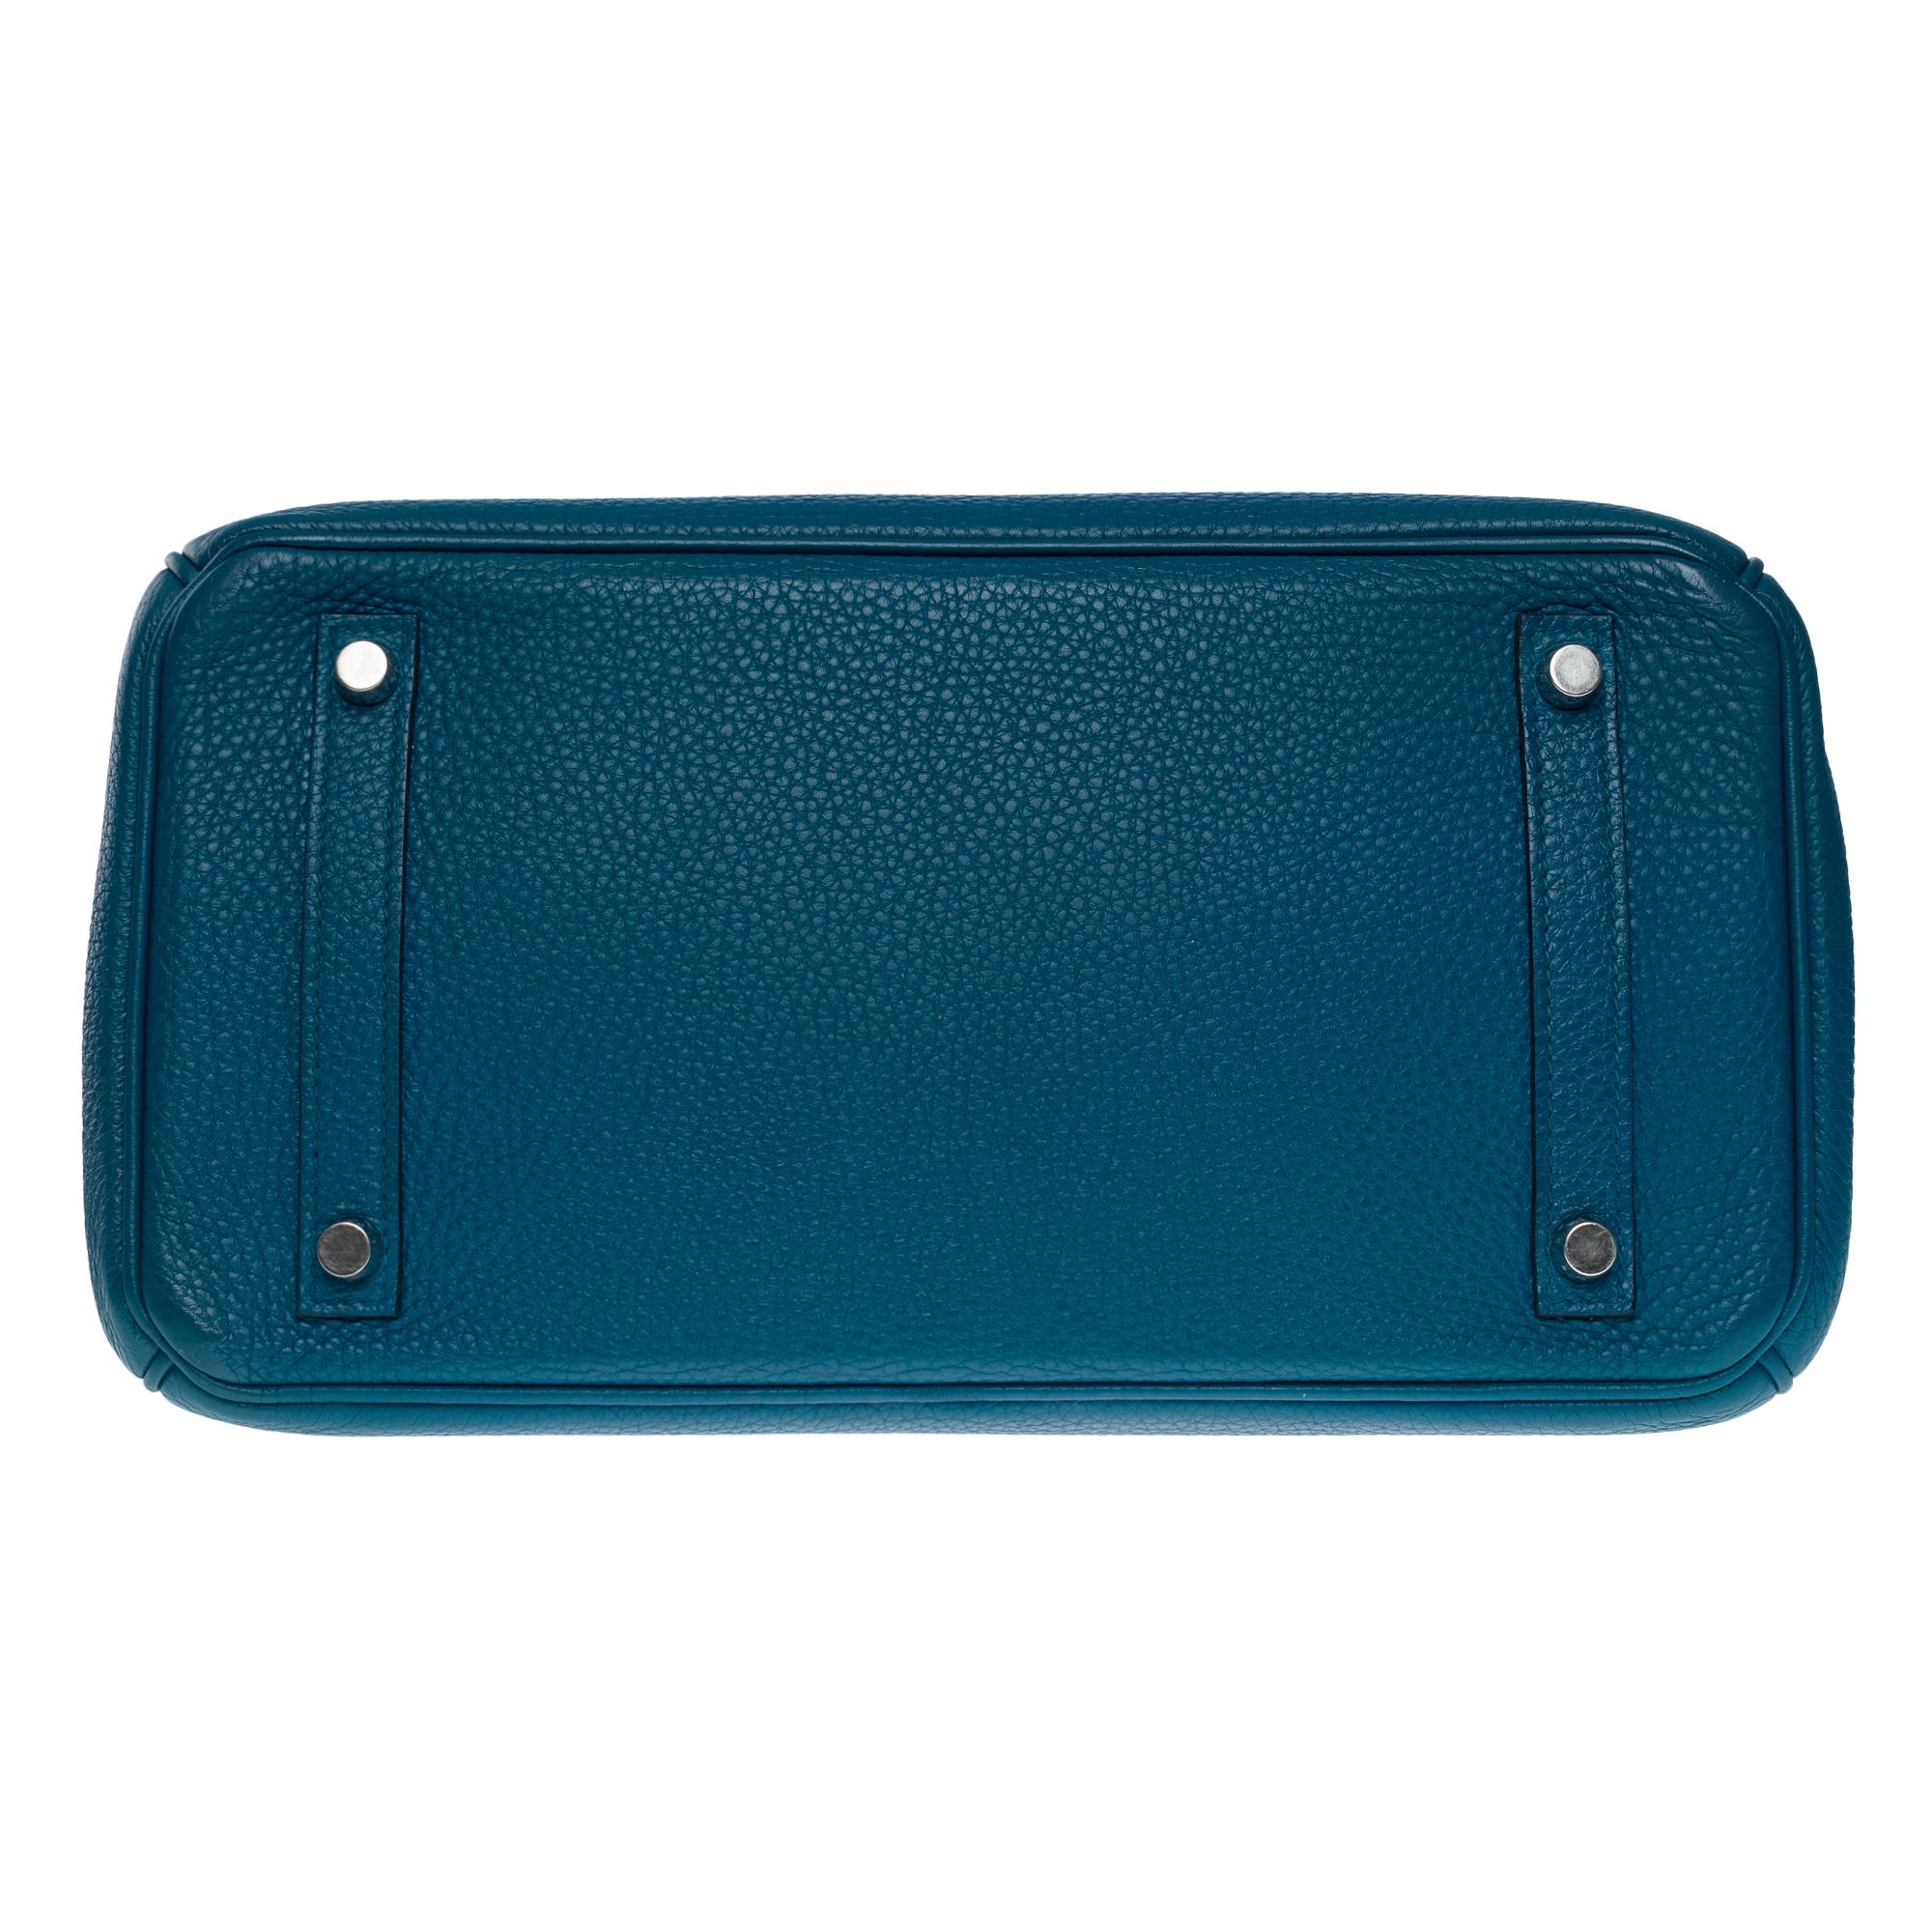 Amazing Hermès Birkin 30 handbag in Blue Colvert Togo leather, SHW 6